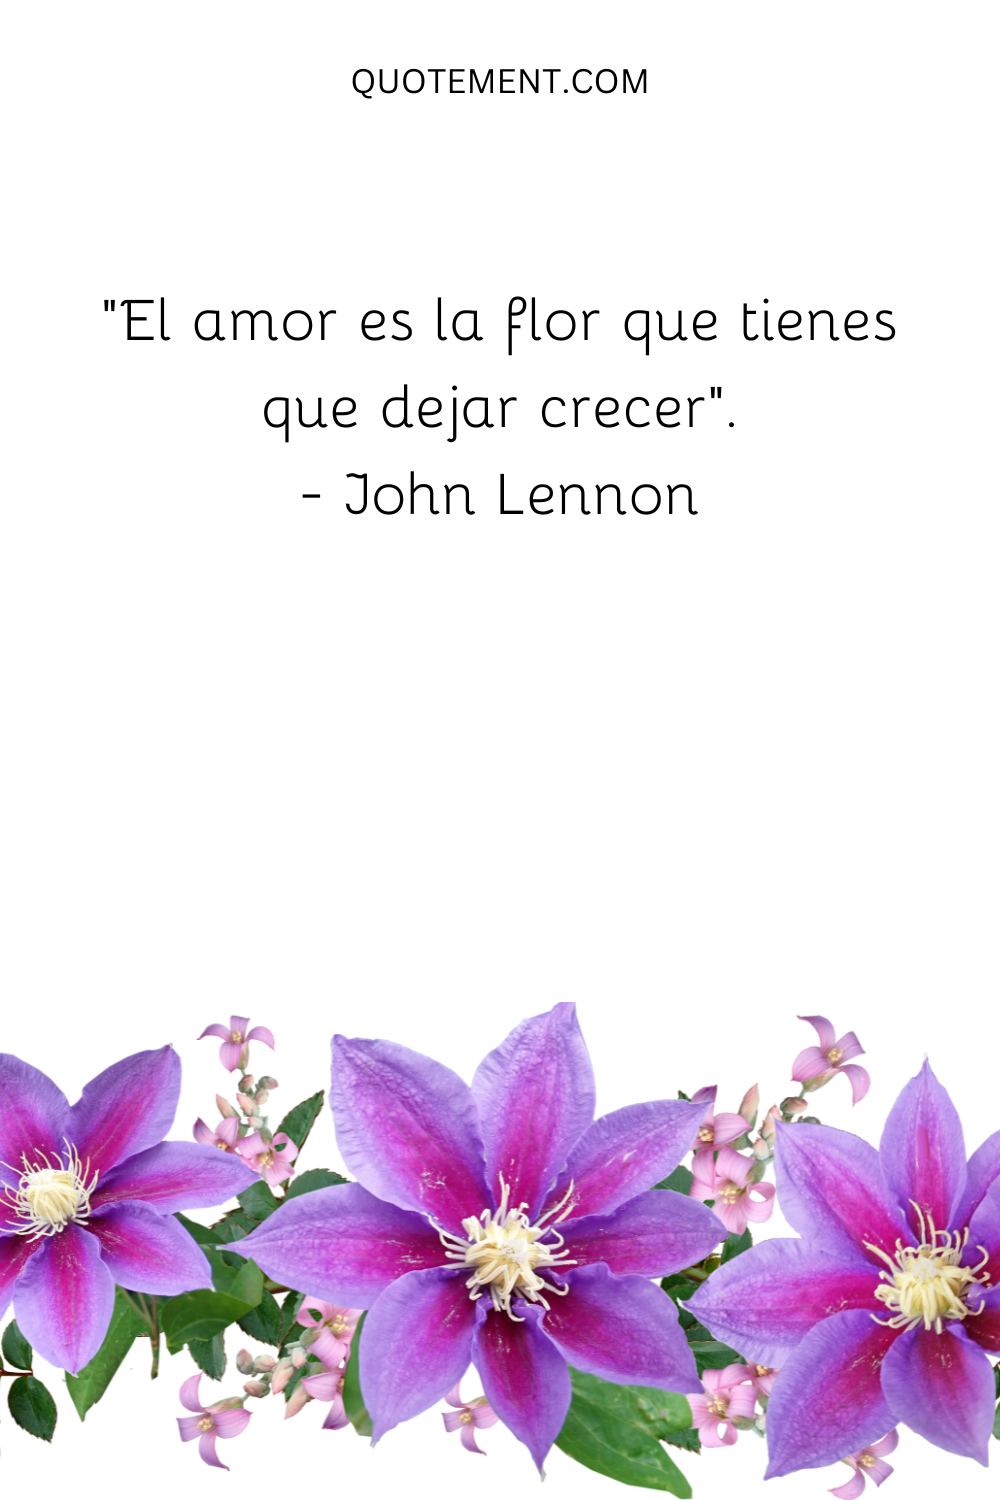 "El amor es la flor que tienes que dejar crecer". - John Lennon